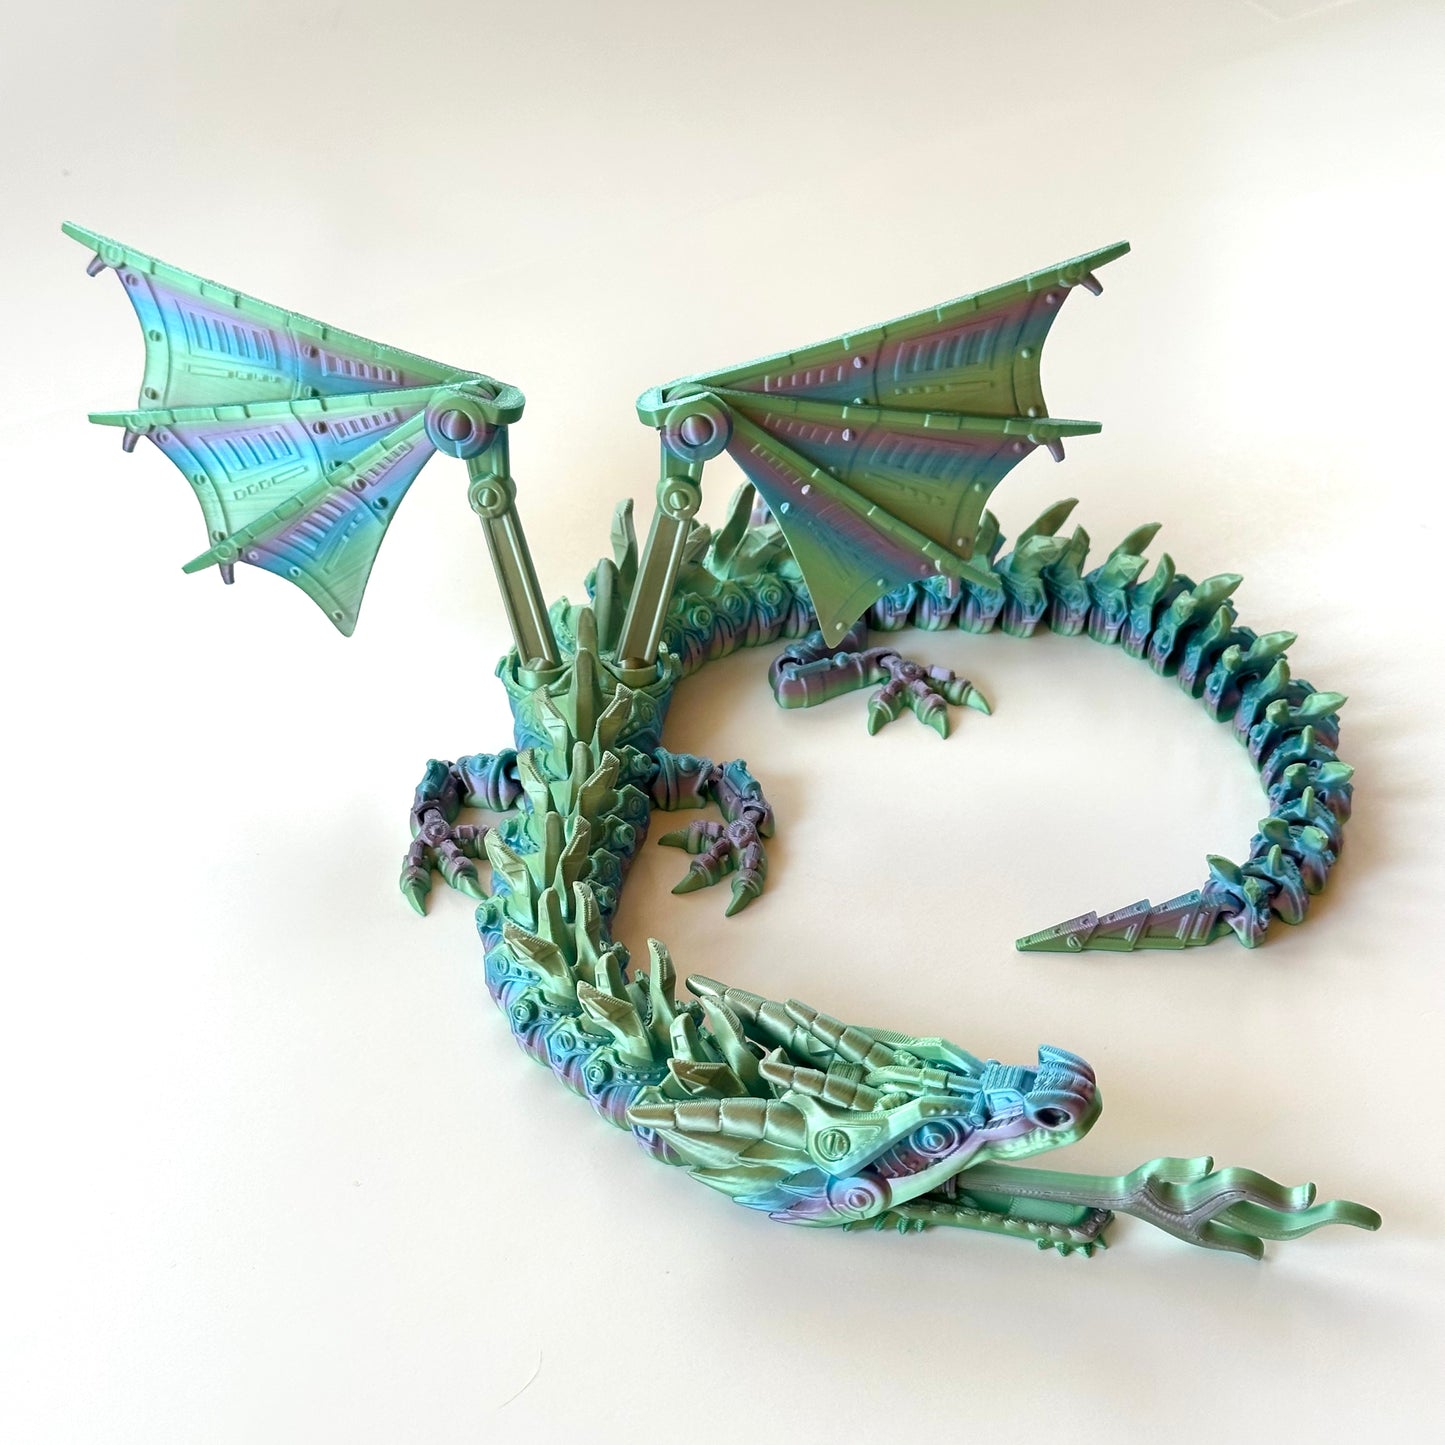 Flexi Mech Dragon - 3D Printed Articulating Figure